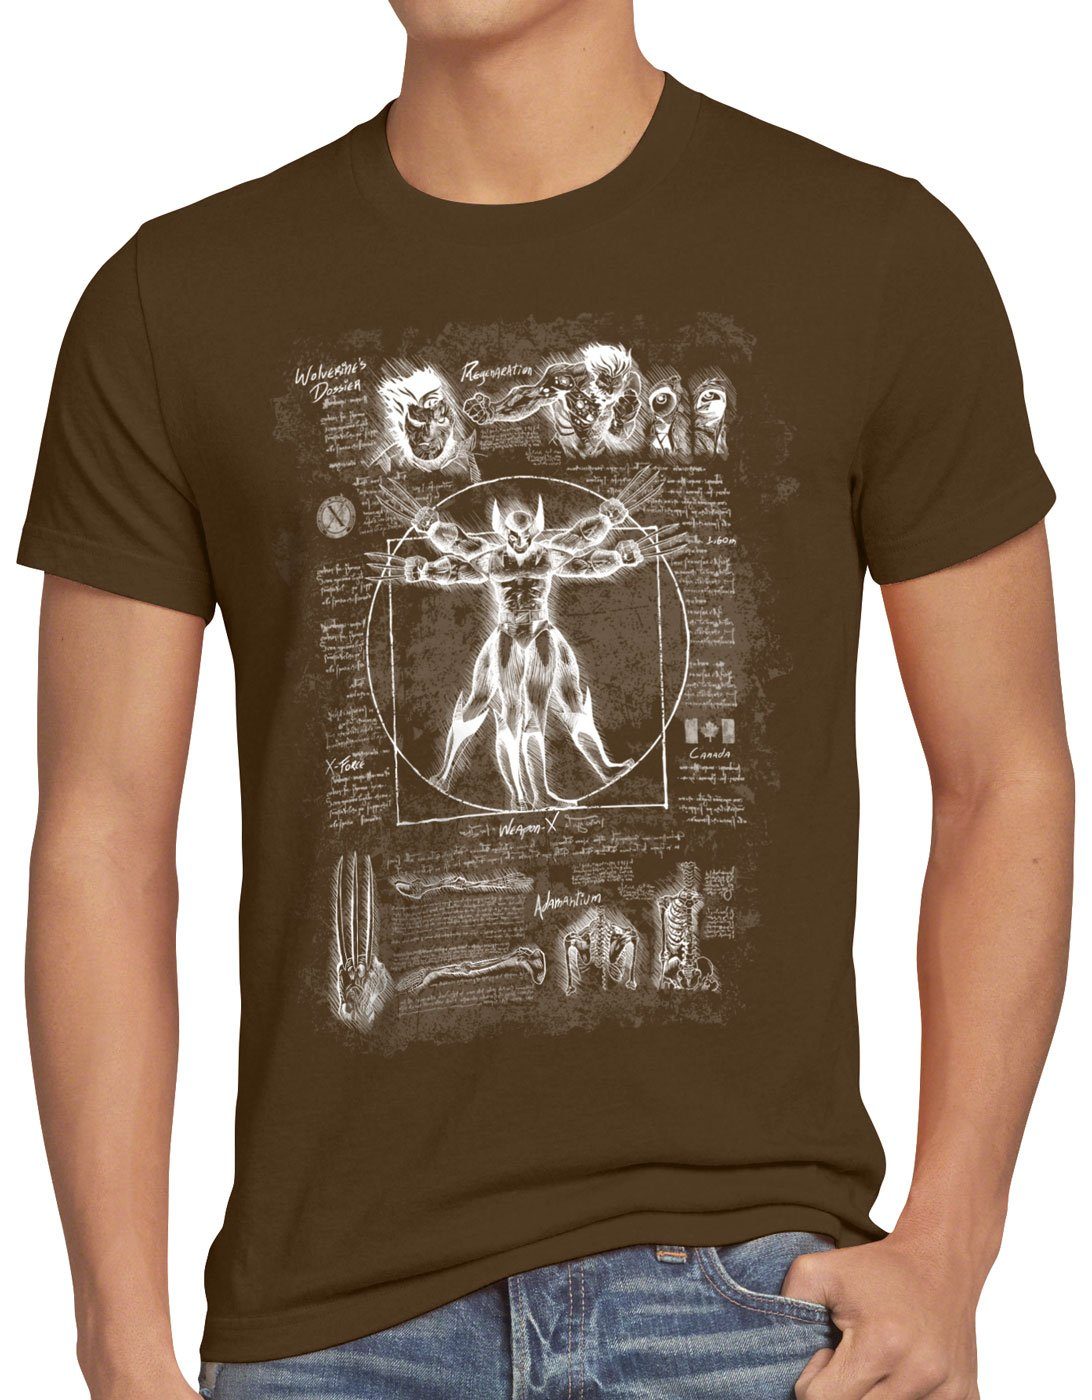 style3 Print-Shirt logan braun mutant Vitruvianischer comic Herren klingen T-Shirt Wolverine kino